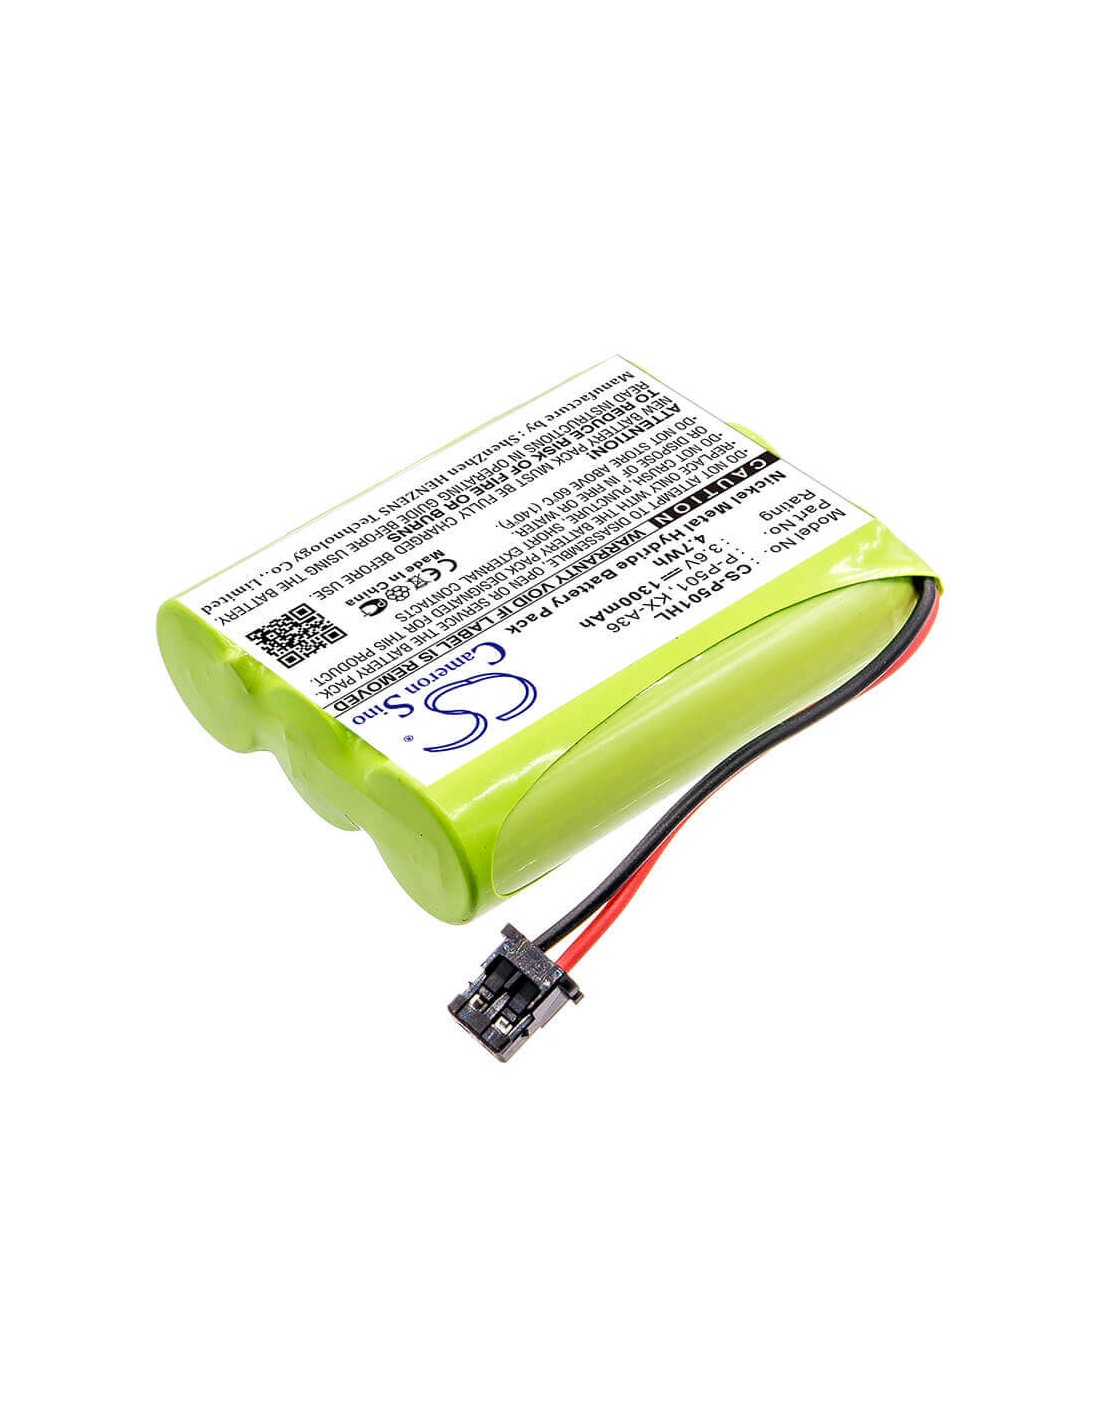 Battery for Memorex, Ybt3n800mah 3.6V, 1300mAh - 4.68Wh